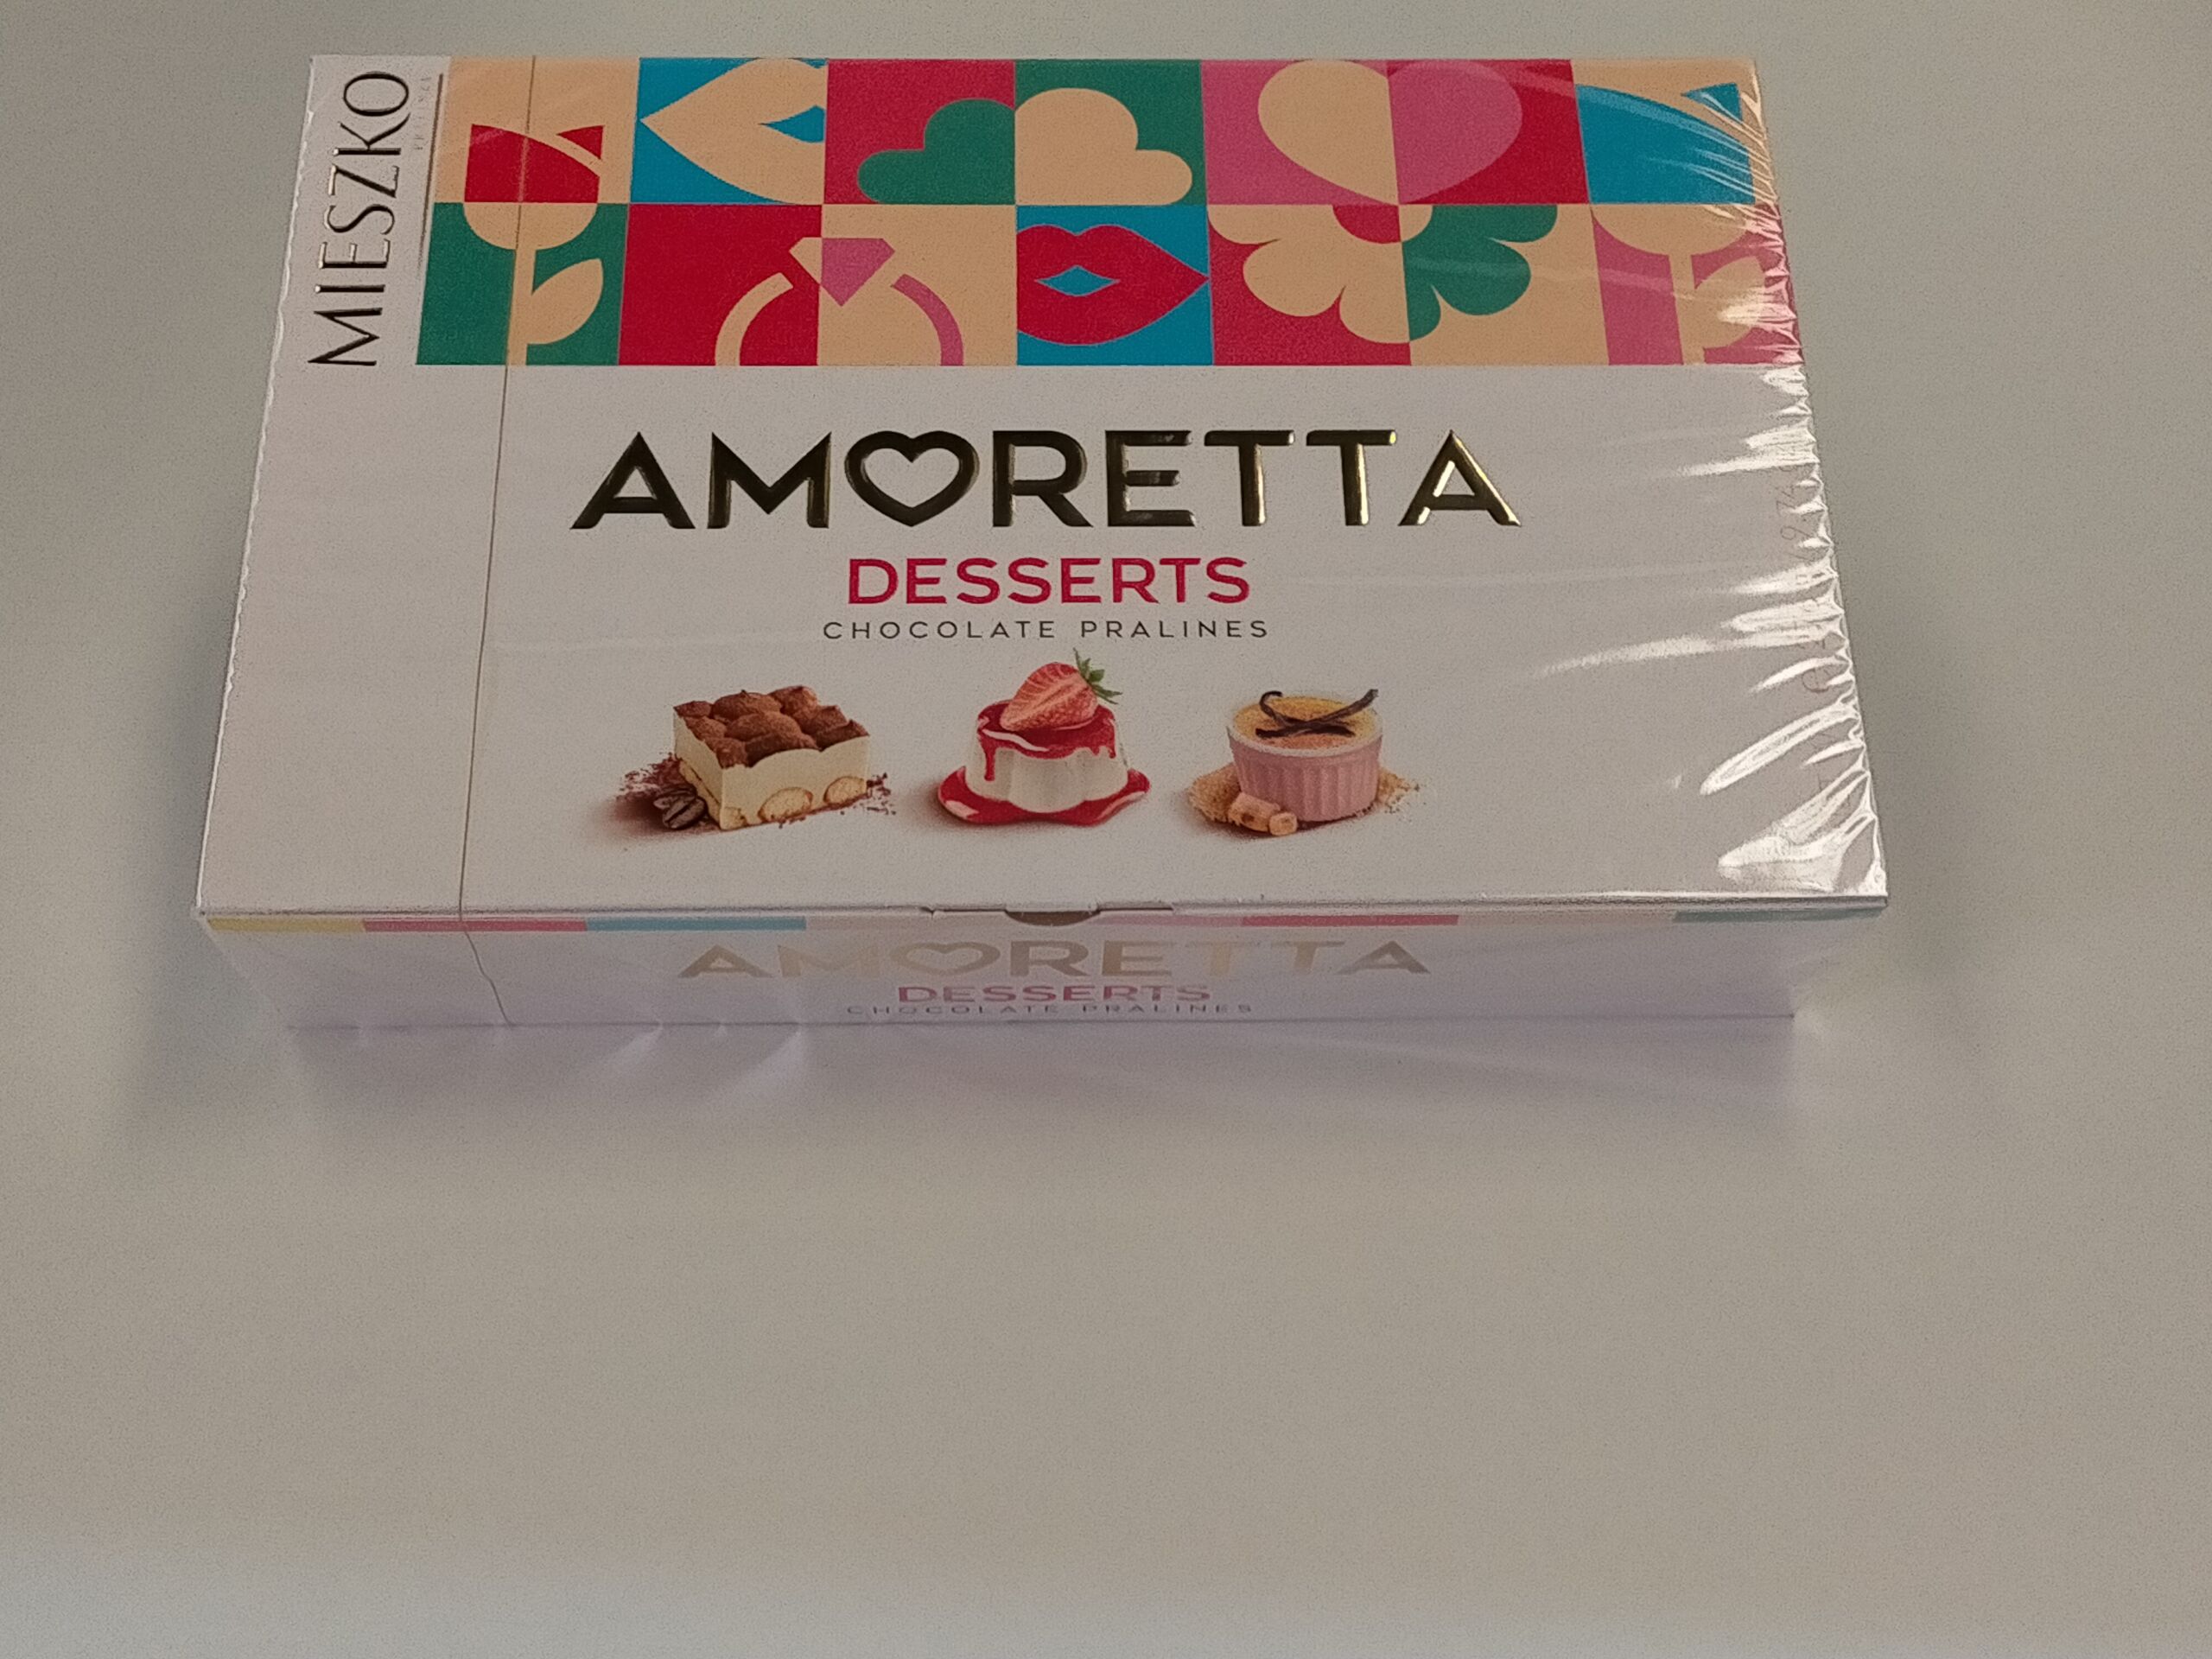 Bombon Amoretta Dessert Caja 276 G.